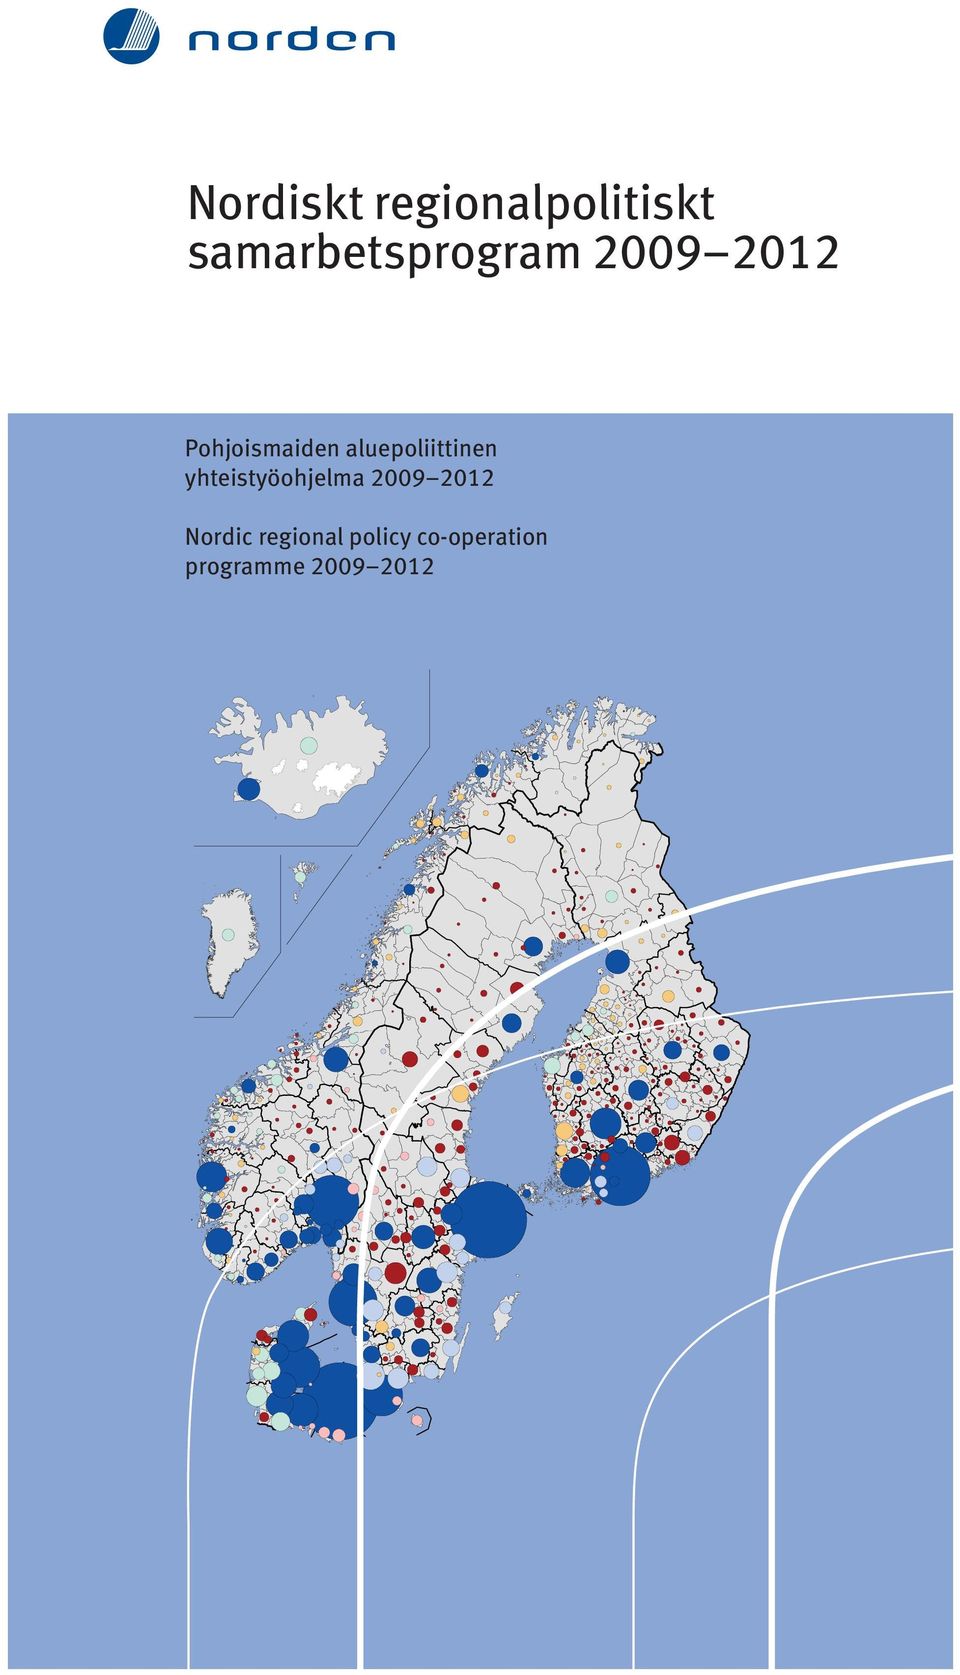 aluepoliittinen yhteistyöohjelma 2009